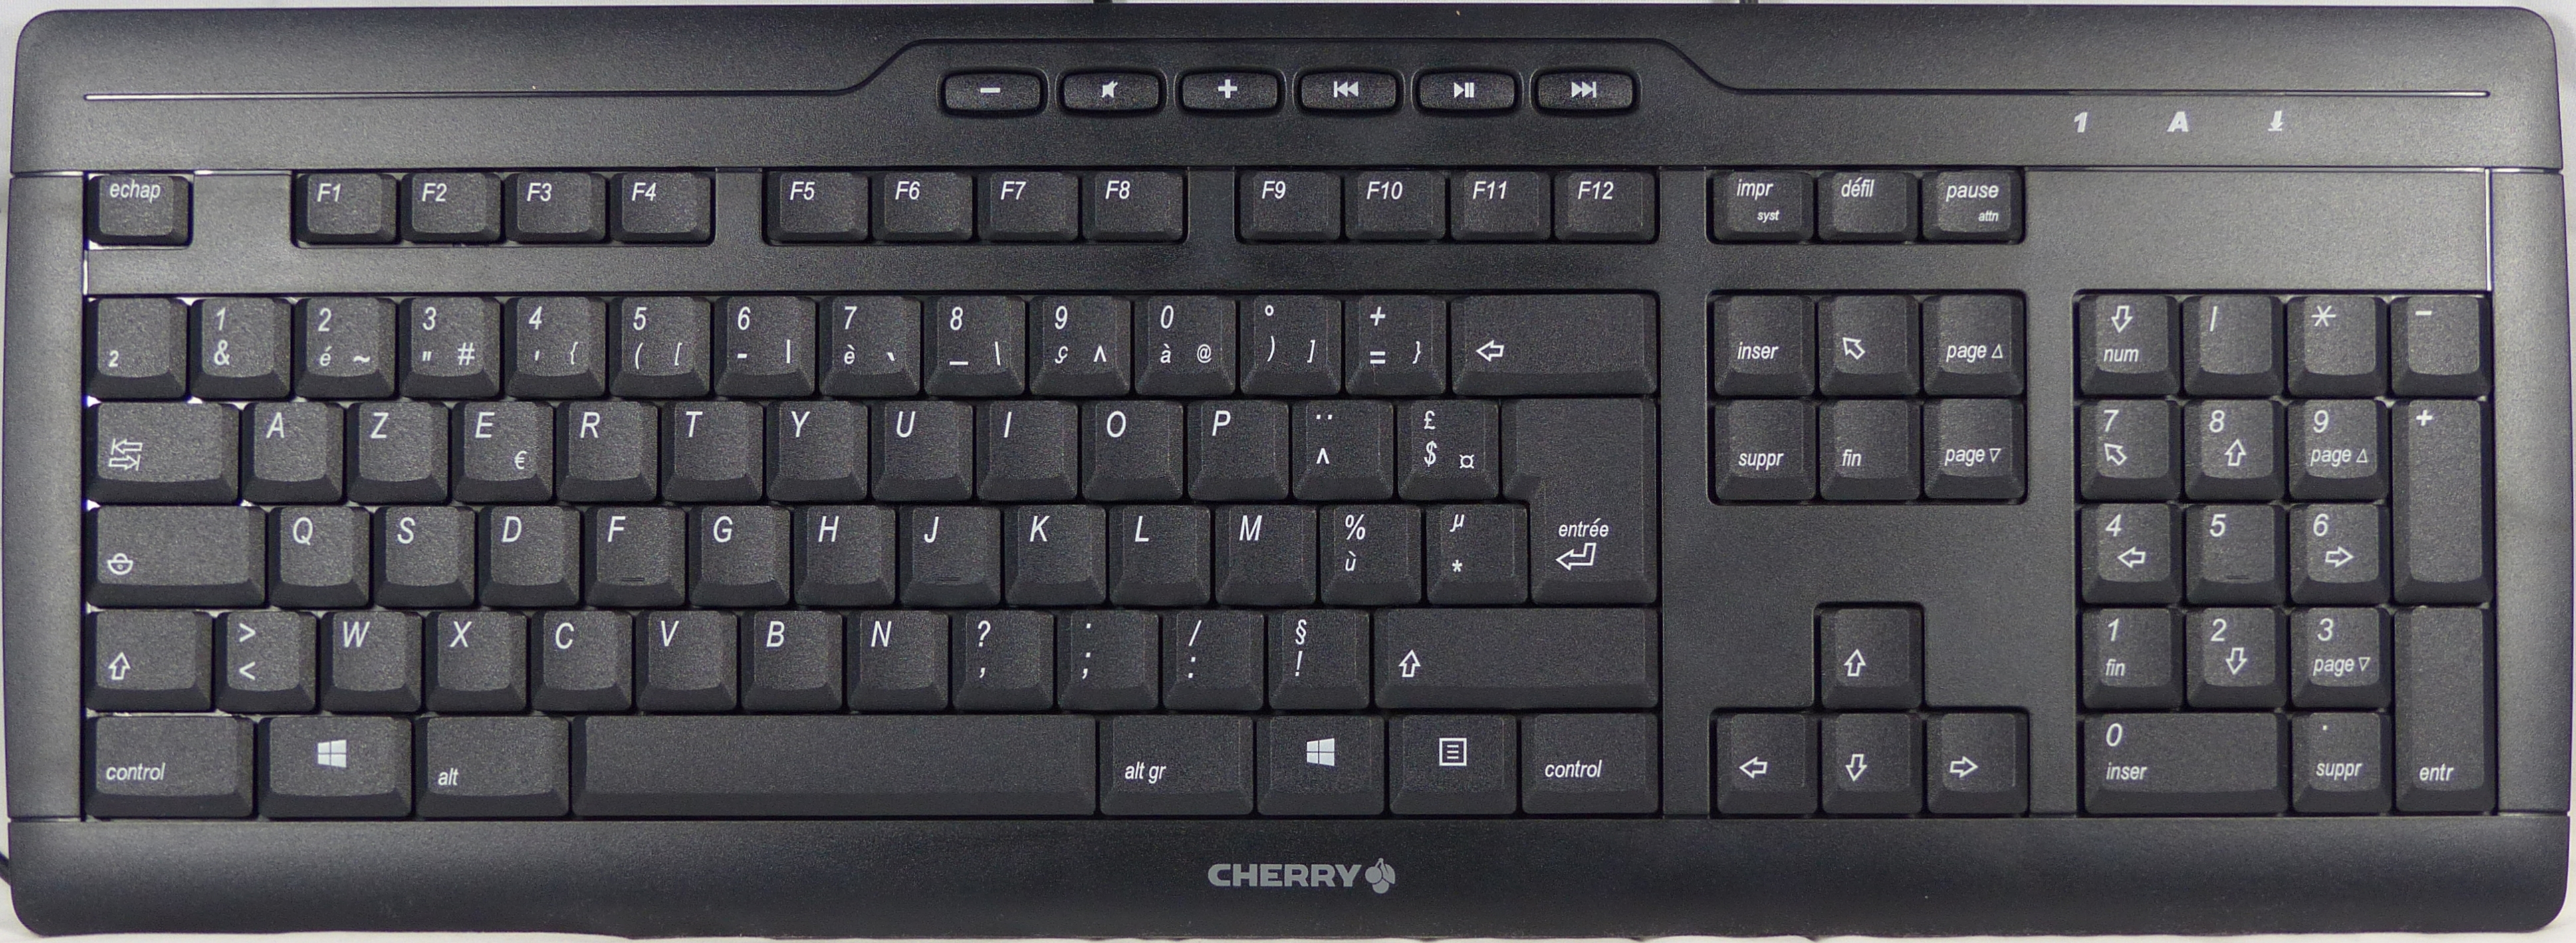 Test Cherry Stream 3.0 : un clavier bureautique élégant - Les Numériques